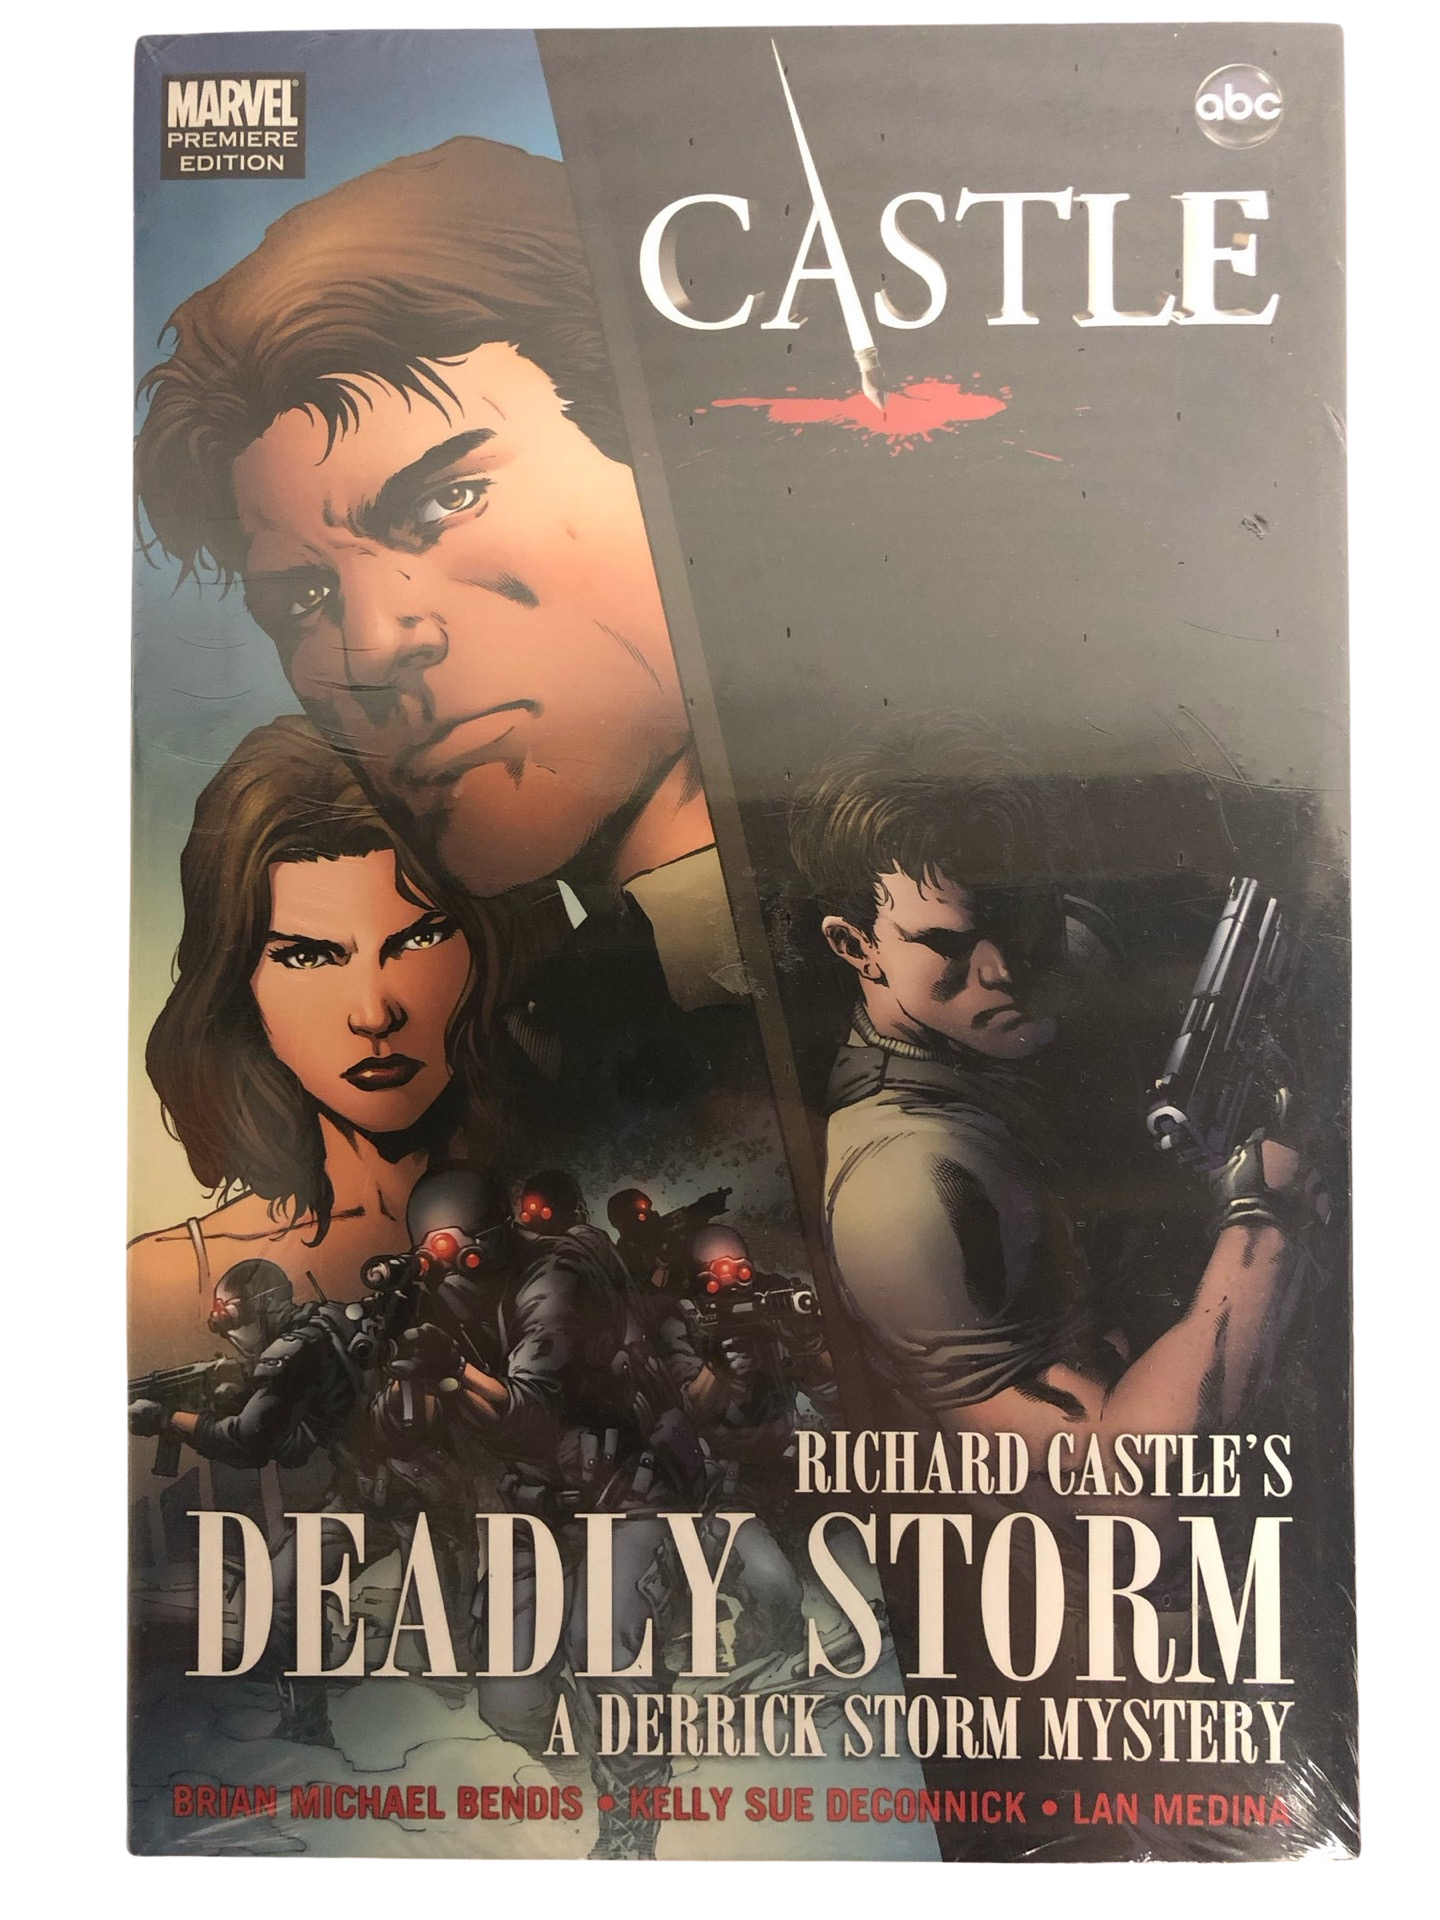 Castle: Richard Castle’s Deadly Storm